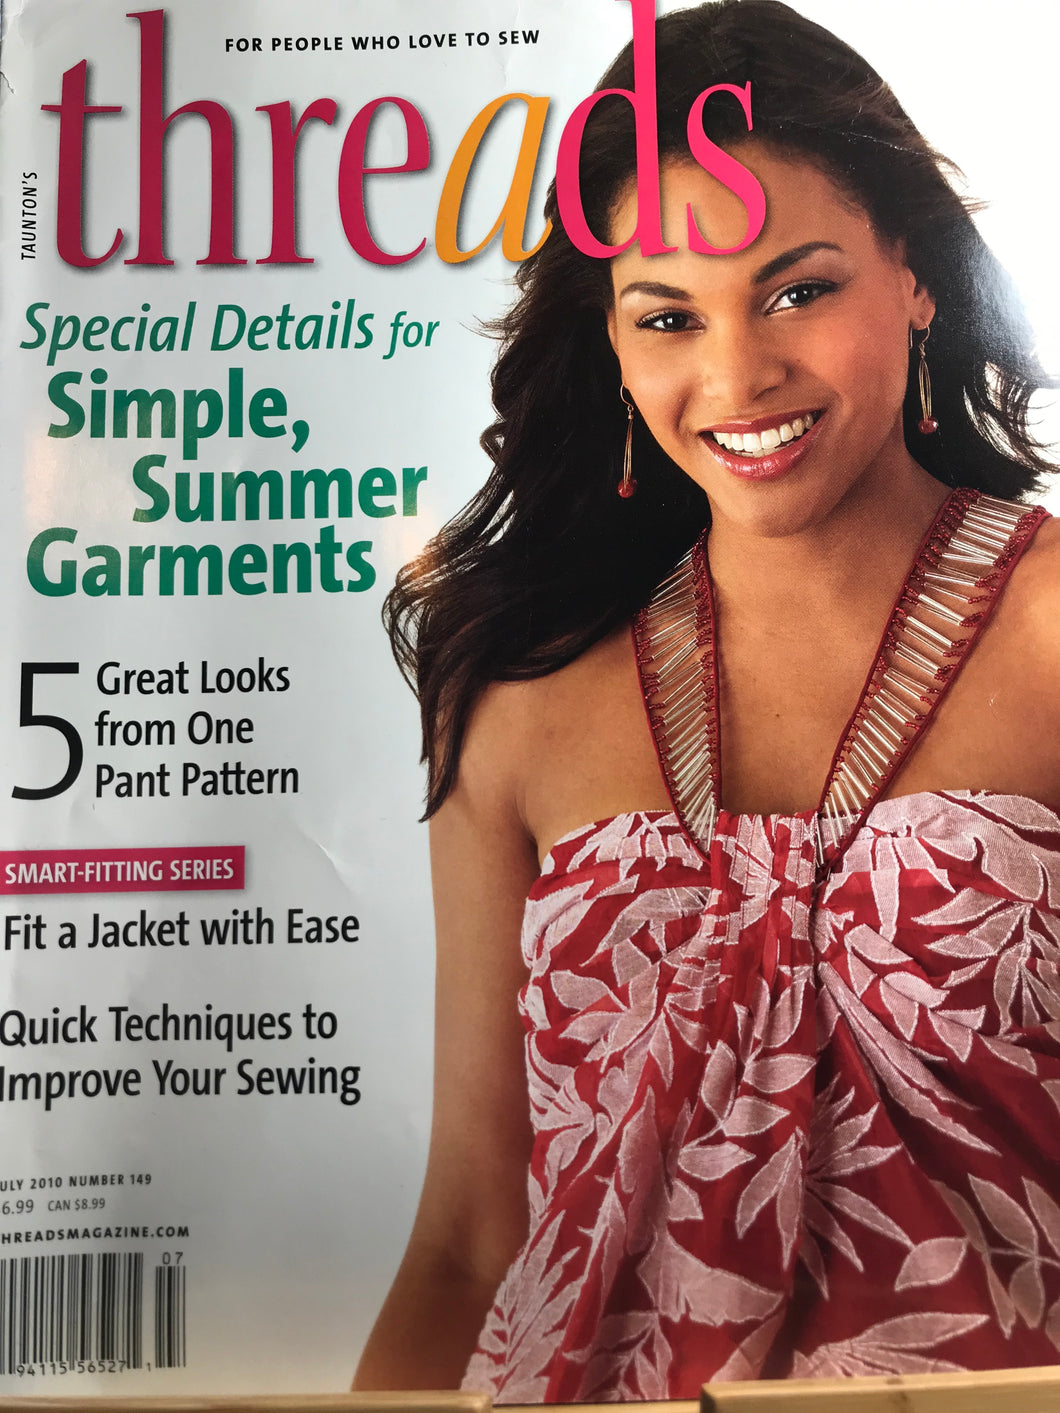 Threads Magazine Issue # 149 June 2010